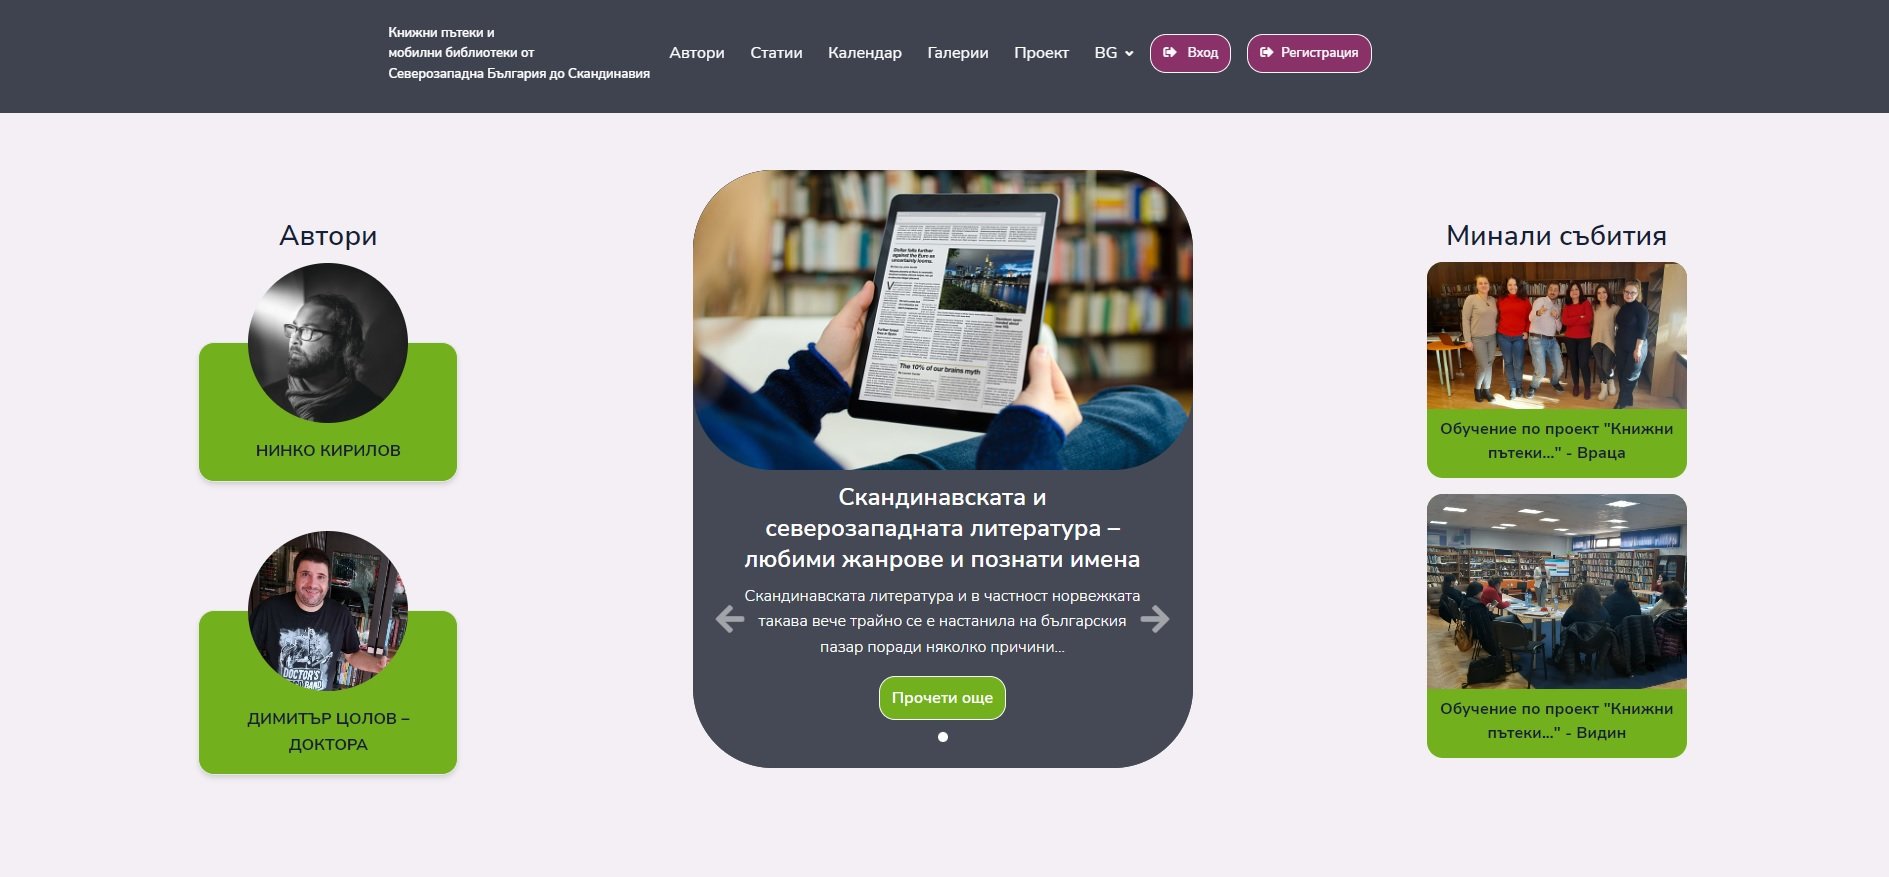 Онлайн платформа по проект "Книжни пътеки и мобилни библиотеки от Северозападна България до Скандинавия"